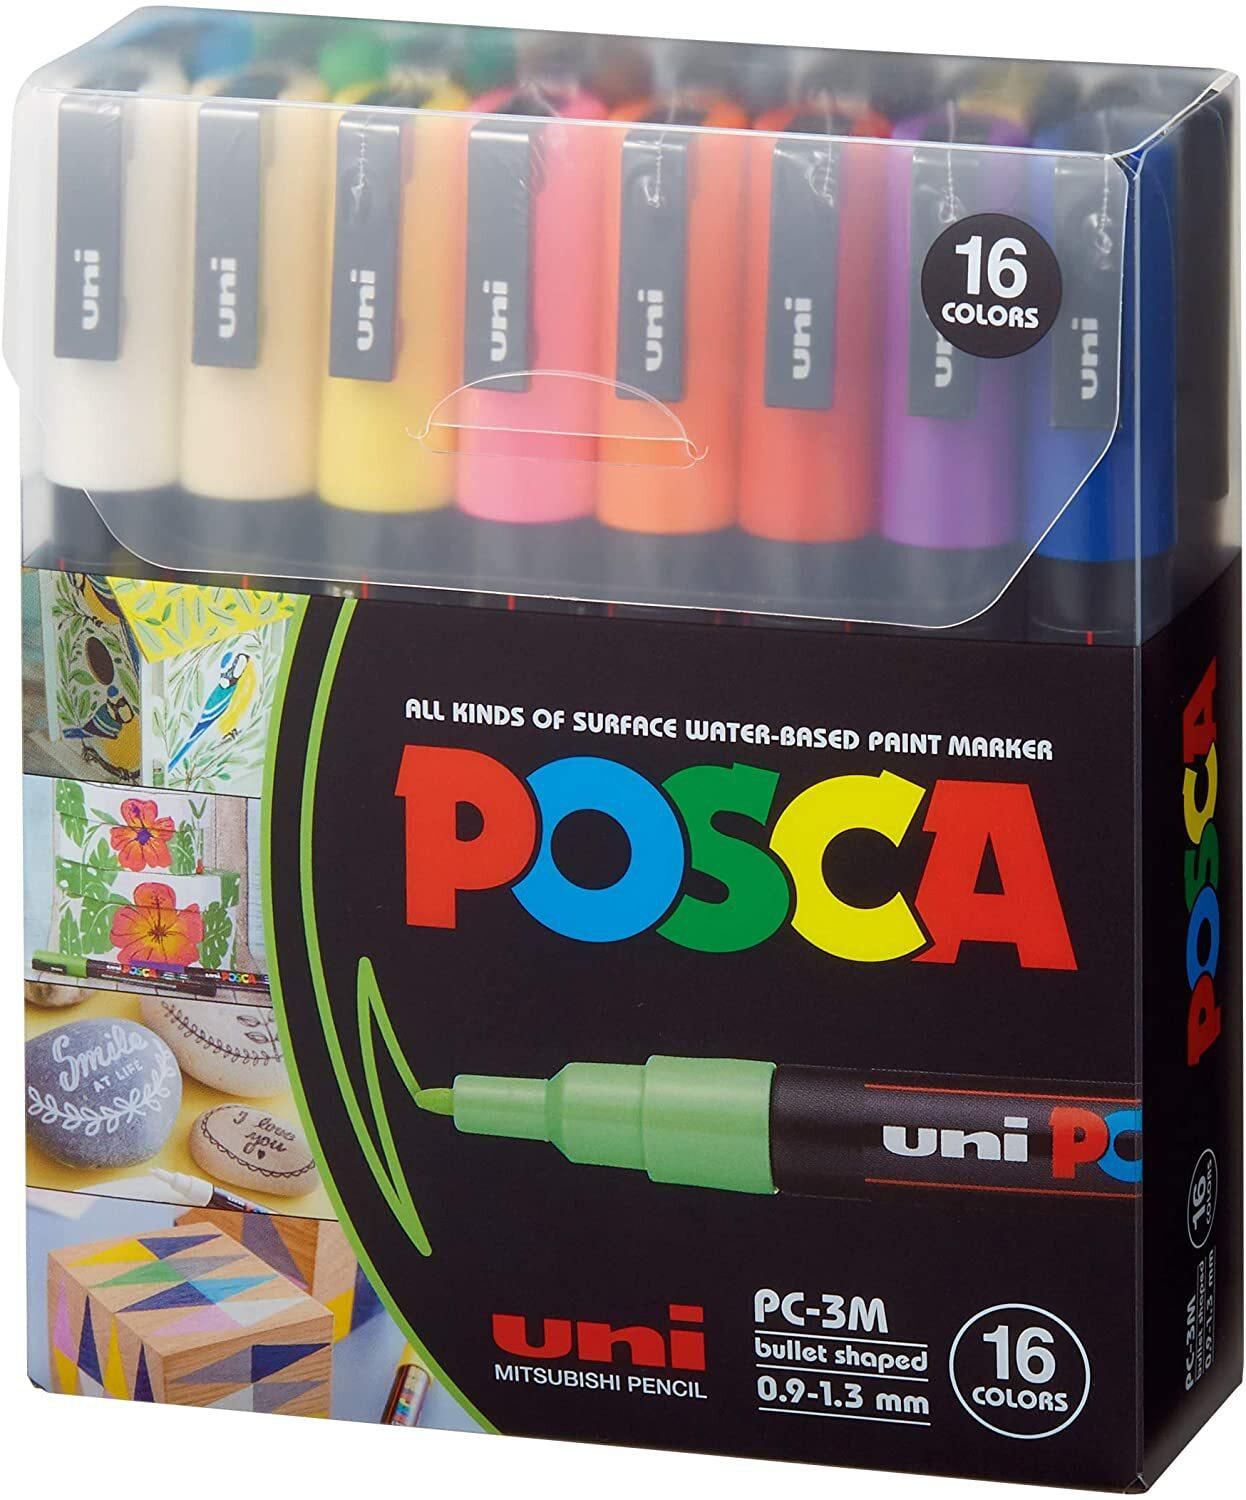 Generic Posca Paint Marker Pen, Pc-3M Extra Fine 0.9-1.3 mm, 16 Colors